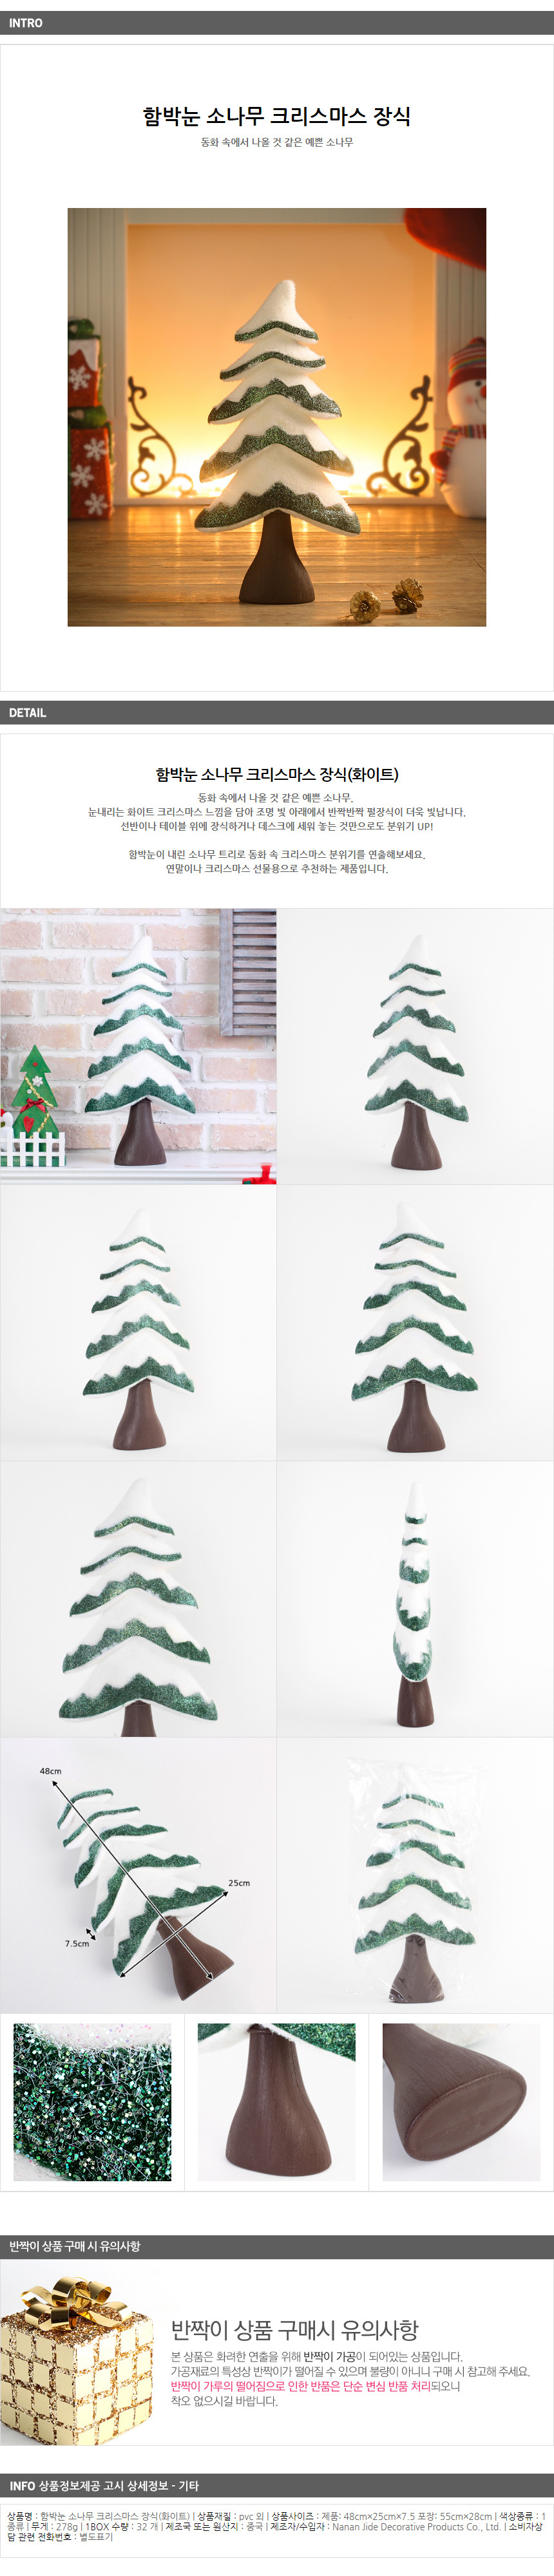 크리스마스장식 소나무 미니 이색트리 48cm 트리나무